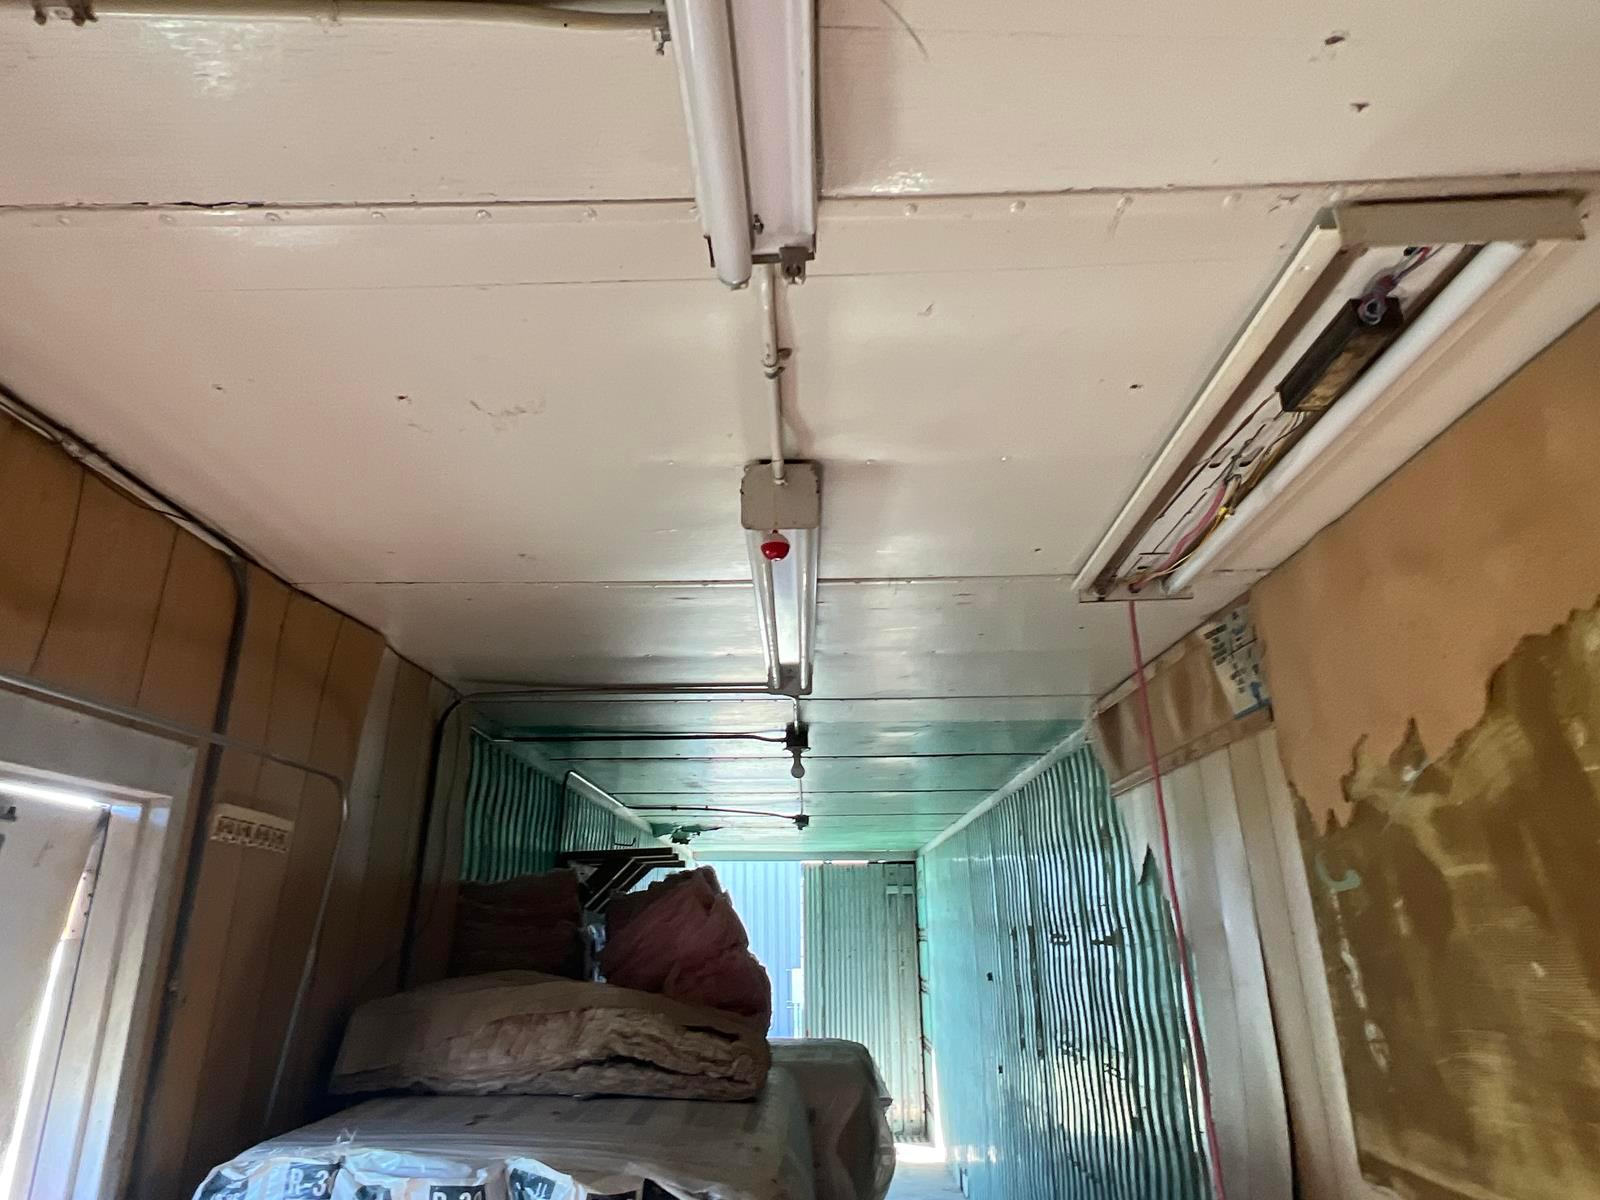 Freuhauf 40ft Enclosed Dry Van Jobsite Trailer